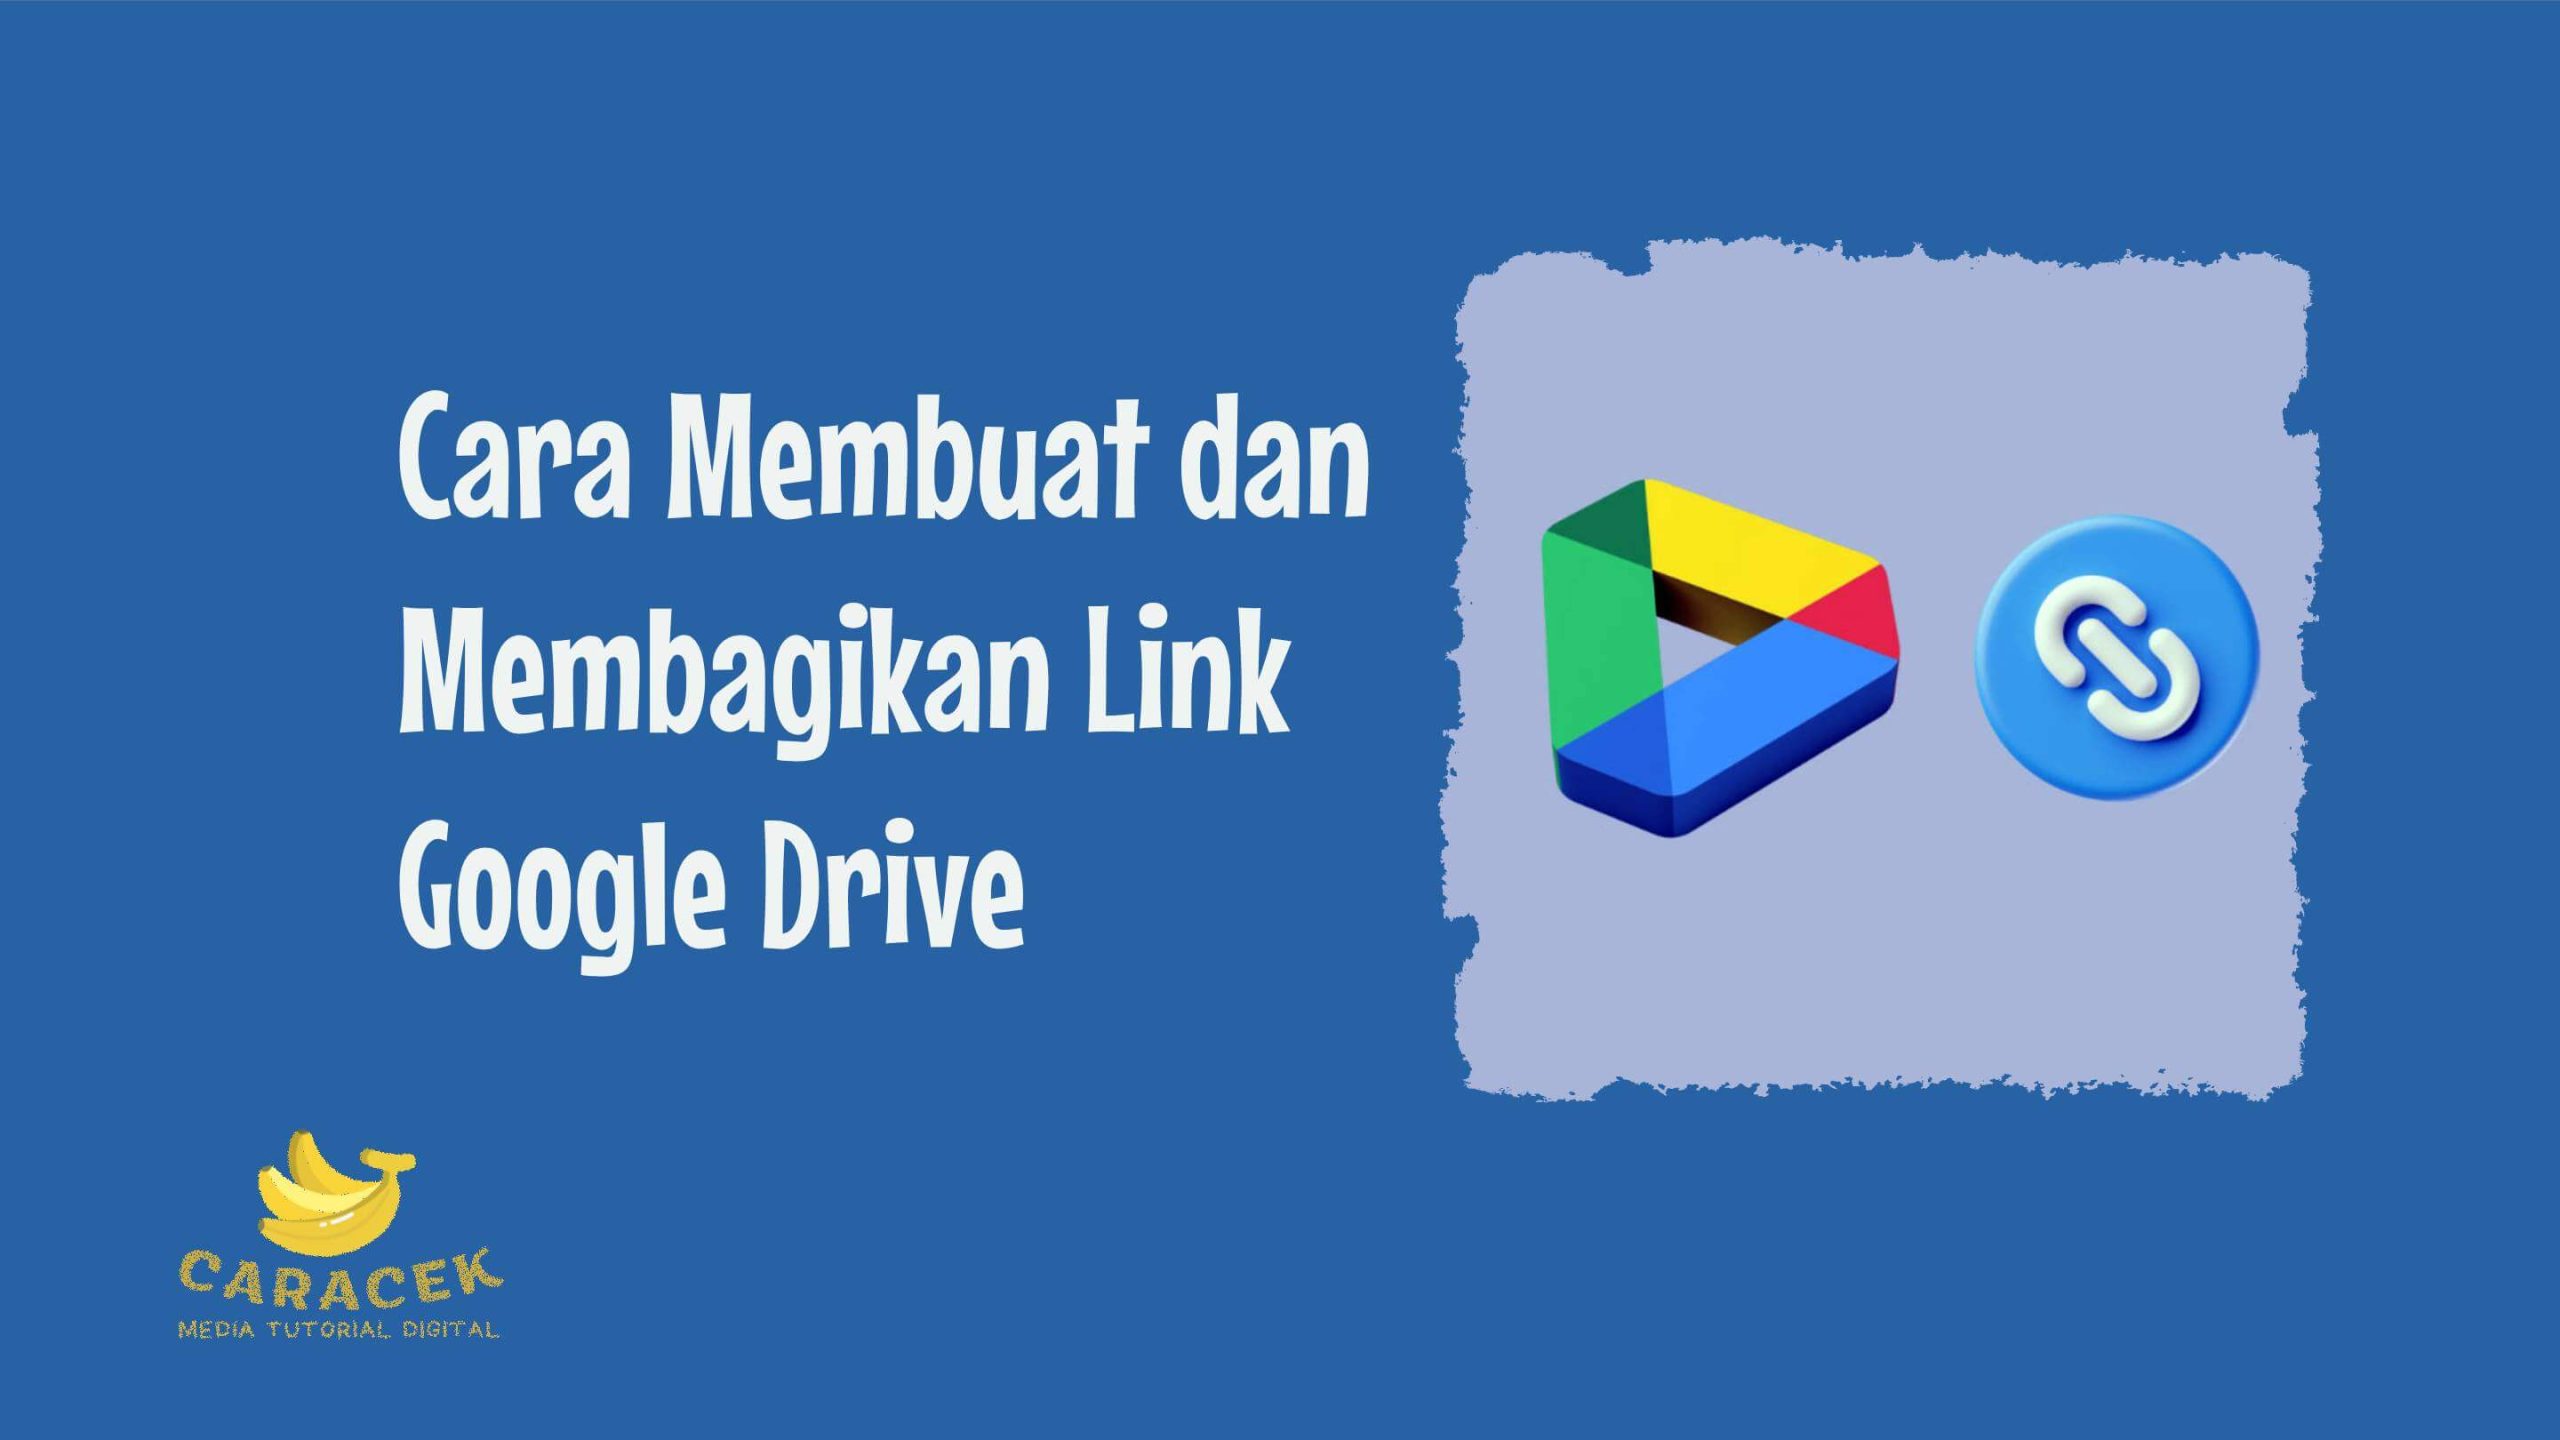 Cara Membuat dan Membagikan Link Google Drive